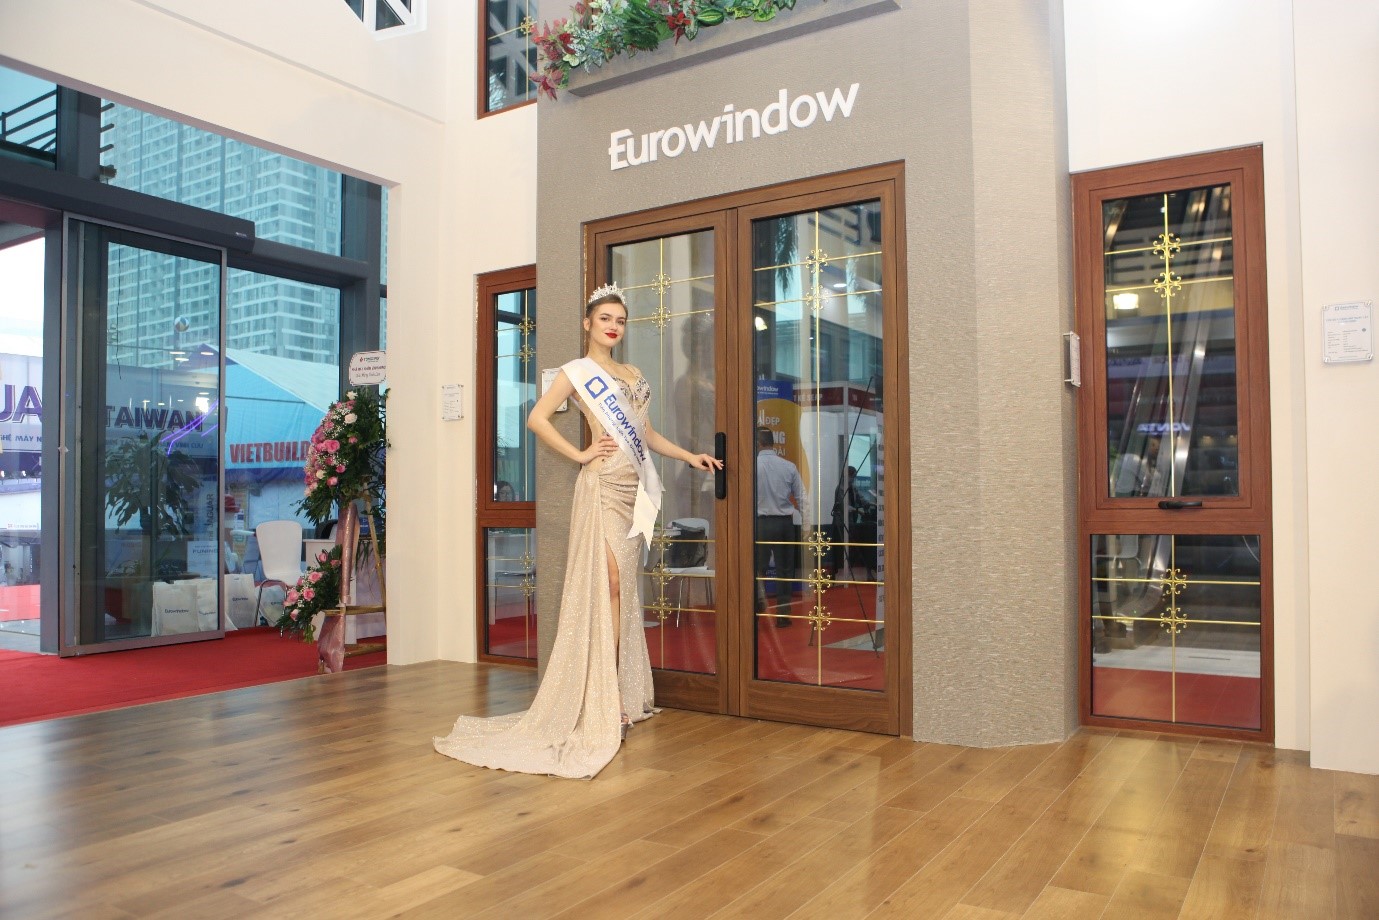 Cửa nhôm EA60i Eurowindow: Với cửa nhôm EA60i Eurowindow, bạn sẽ tận hưởng một không gian sống thoải mái hơn với sự kết hợp giữa tính năng cách âm và cách nhiệt. Với thiết kế đẹp và bền chắc, cửa nhôm EA60i sẽ tạo nên một không gian sống hiện đại và những trải nghiệm thú vị khác cho bạn. Hãy xem hình ảnh để tìm hiểu thêm về sản phẩm và lựa chọn cho ngôi nhà của bạn.